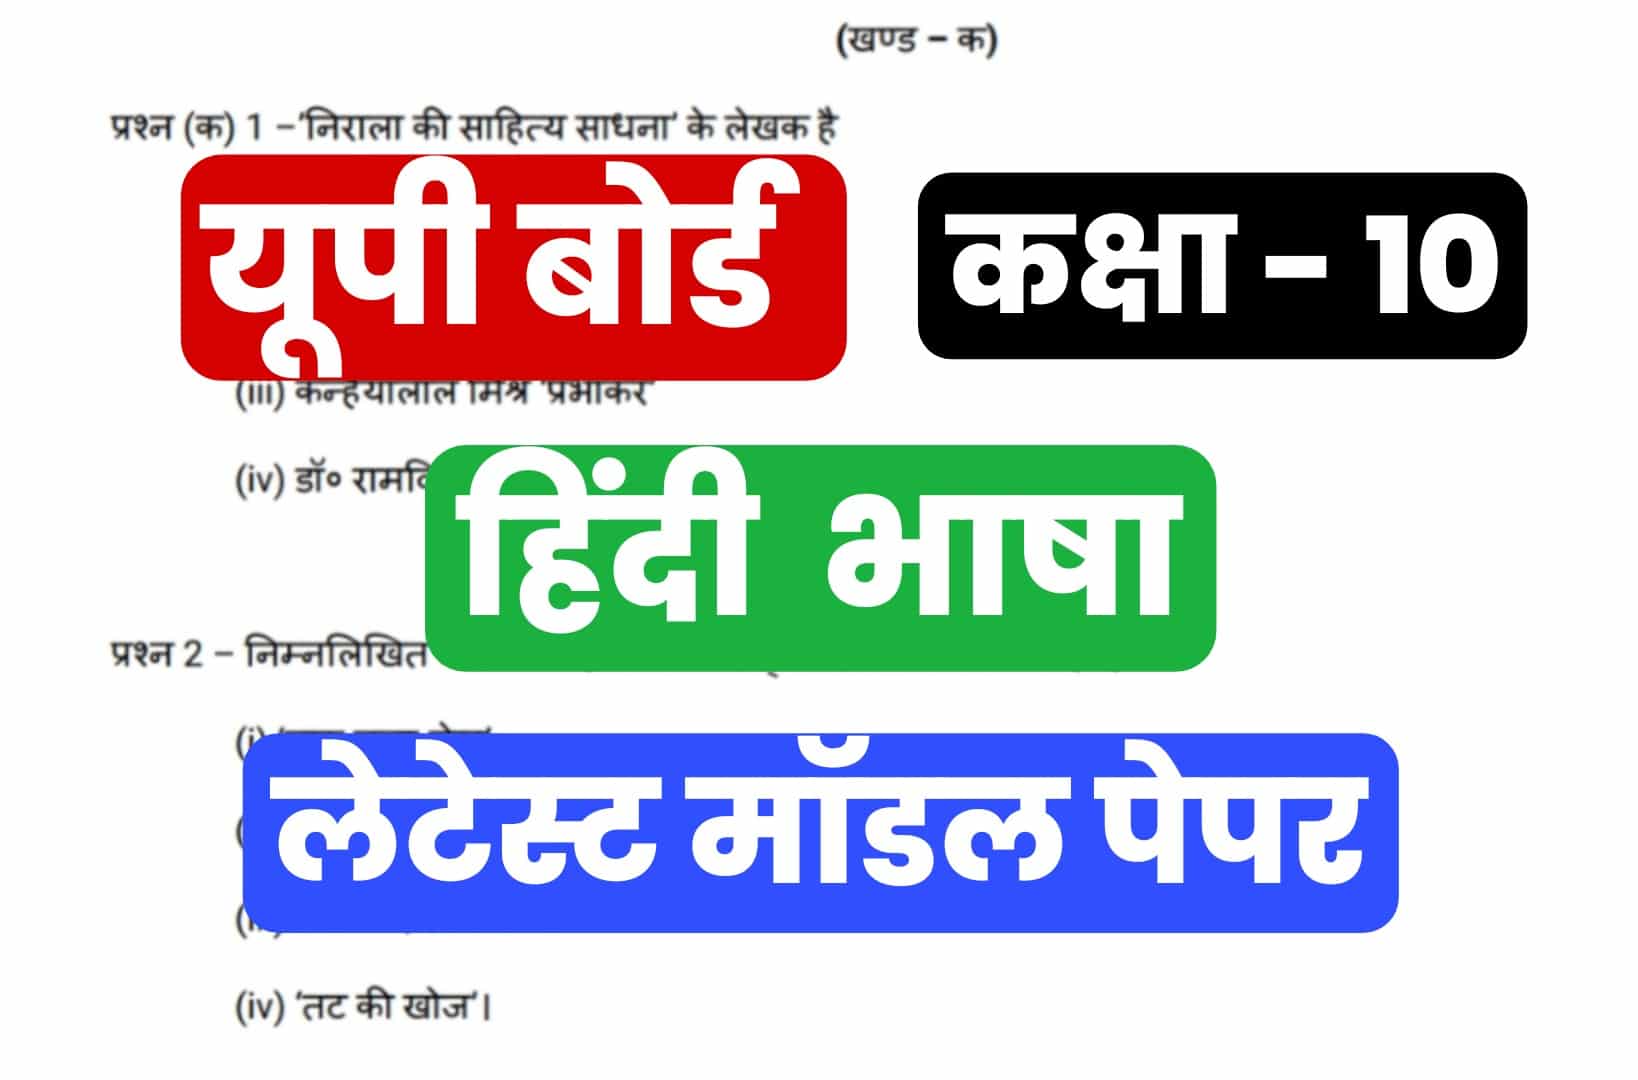 UP Board कक्षा 10 हिंदी भाषा का लेटेस्ट मॉडल प्रश्न पत्र डाउनलोड करने के लिए यहाँ क्लिक करें